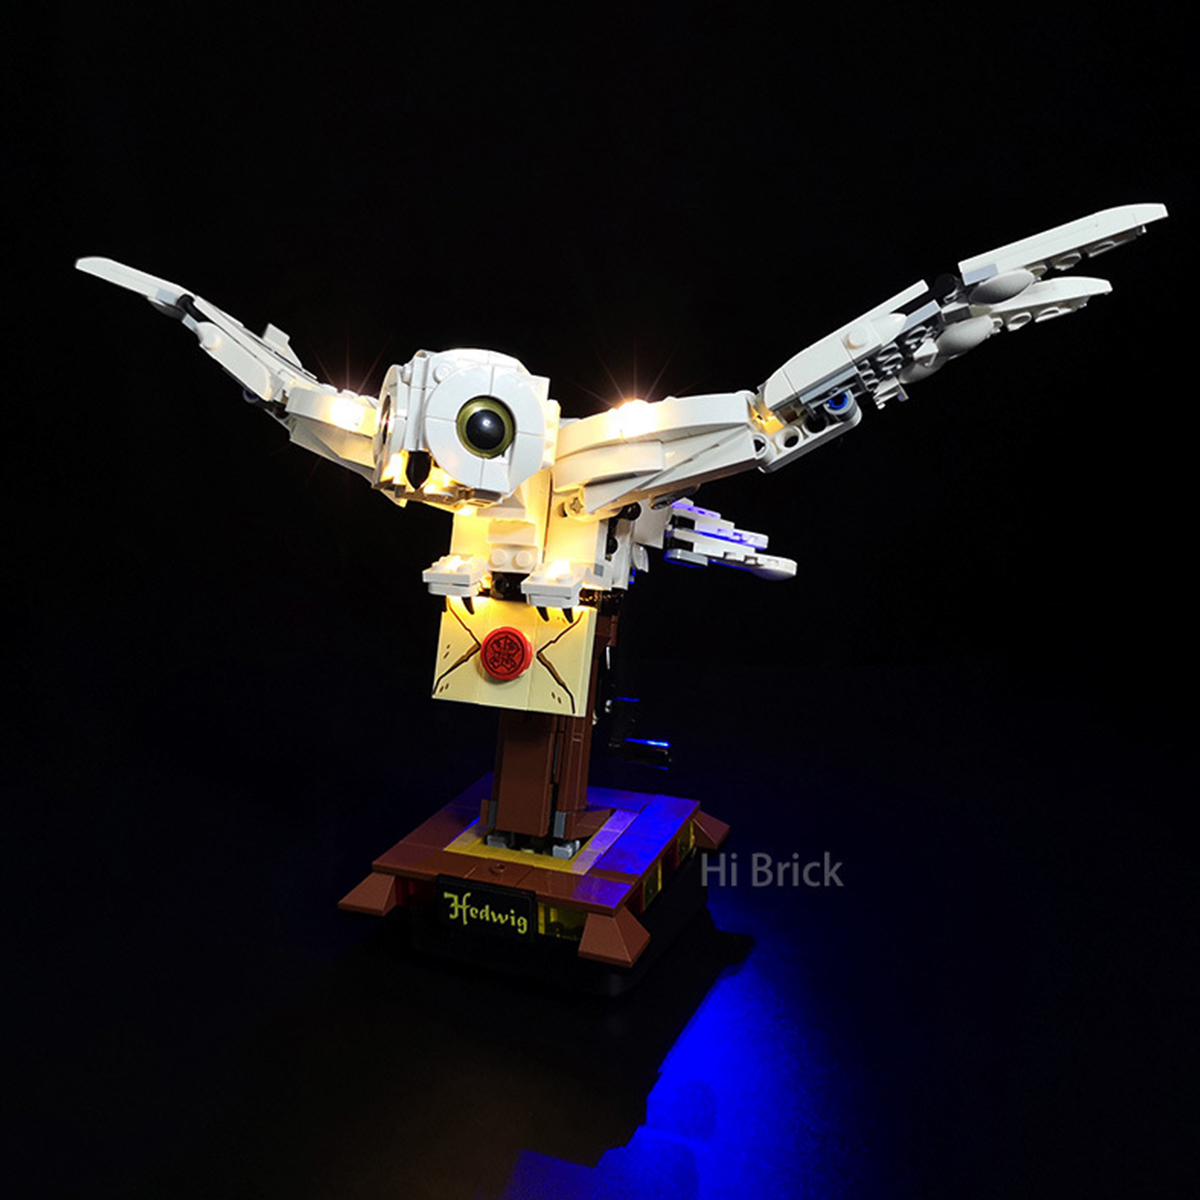 DIY-LED-Light-Lighting-Kit-ONLY-For-Lego-75979-Owl-USB-Powered-Blocks-Bricks-1732006-4